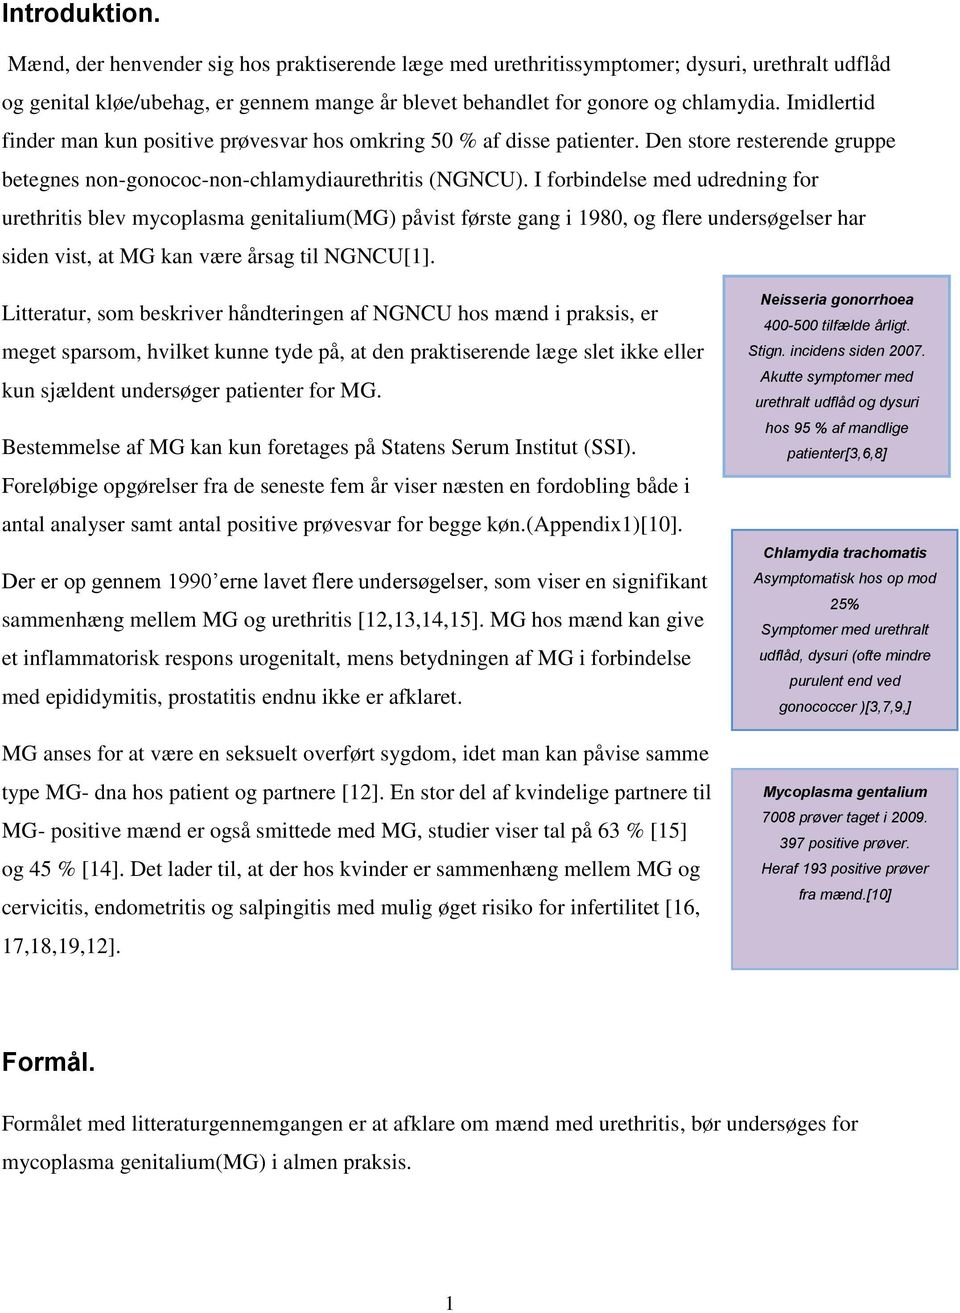 Forskningsopgave. Mycoplasma genitalium ved akut urethritis hos mænd i  almen praksis. Trine Overgaard og Lisa Videbæk Gow - PDF Free Download